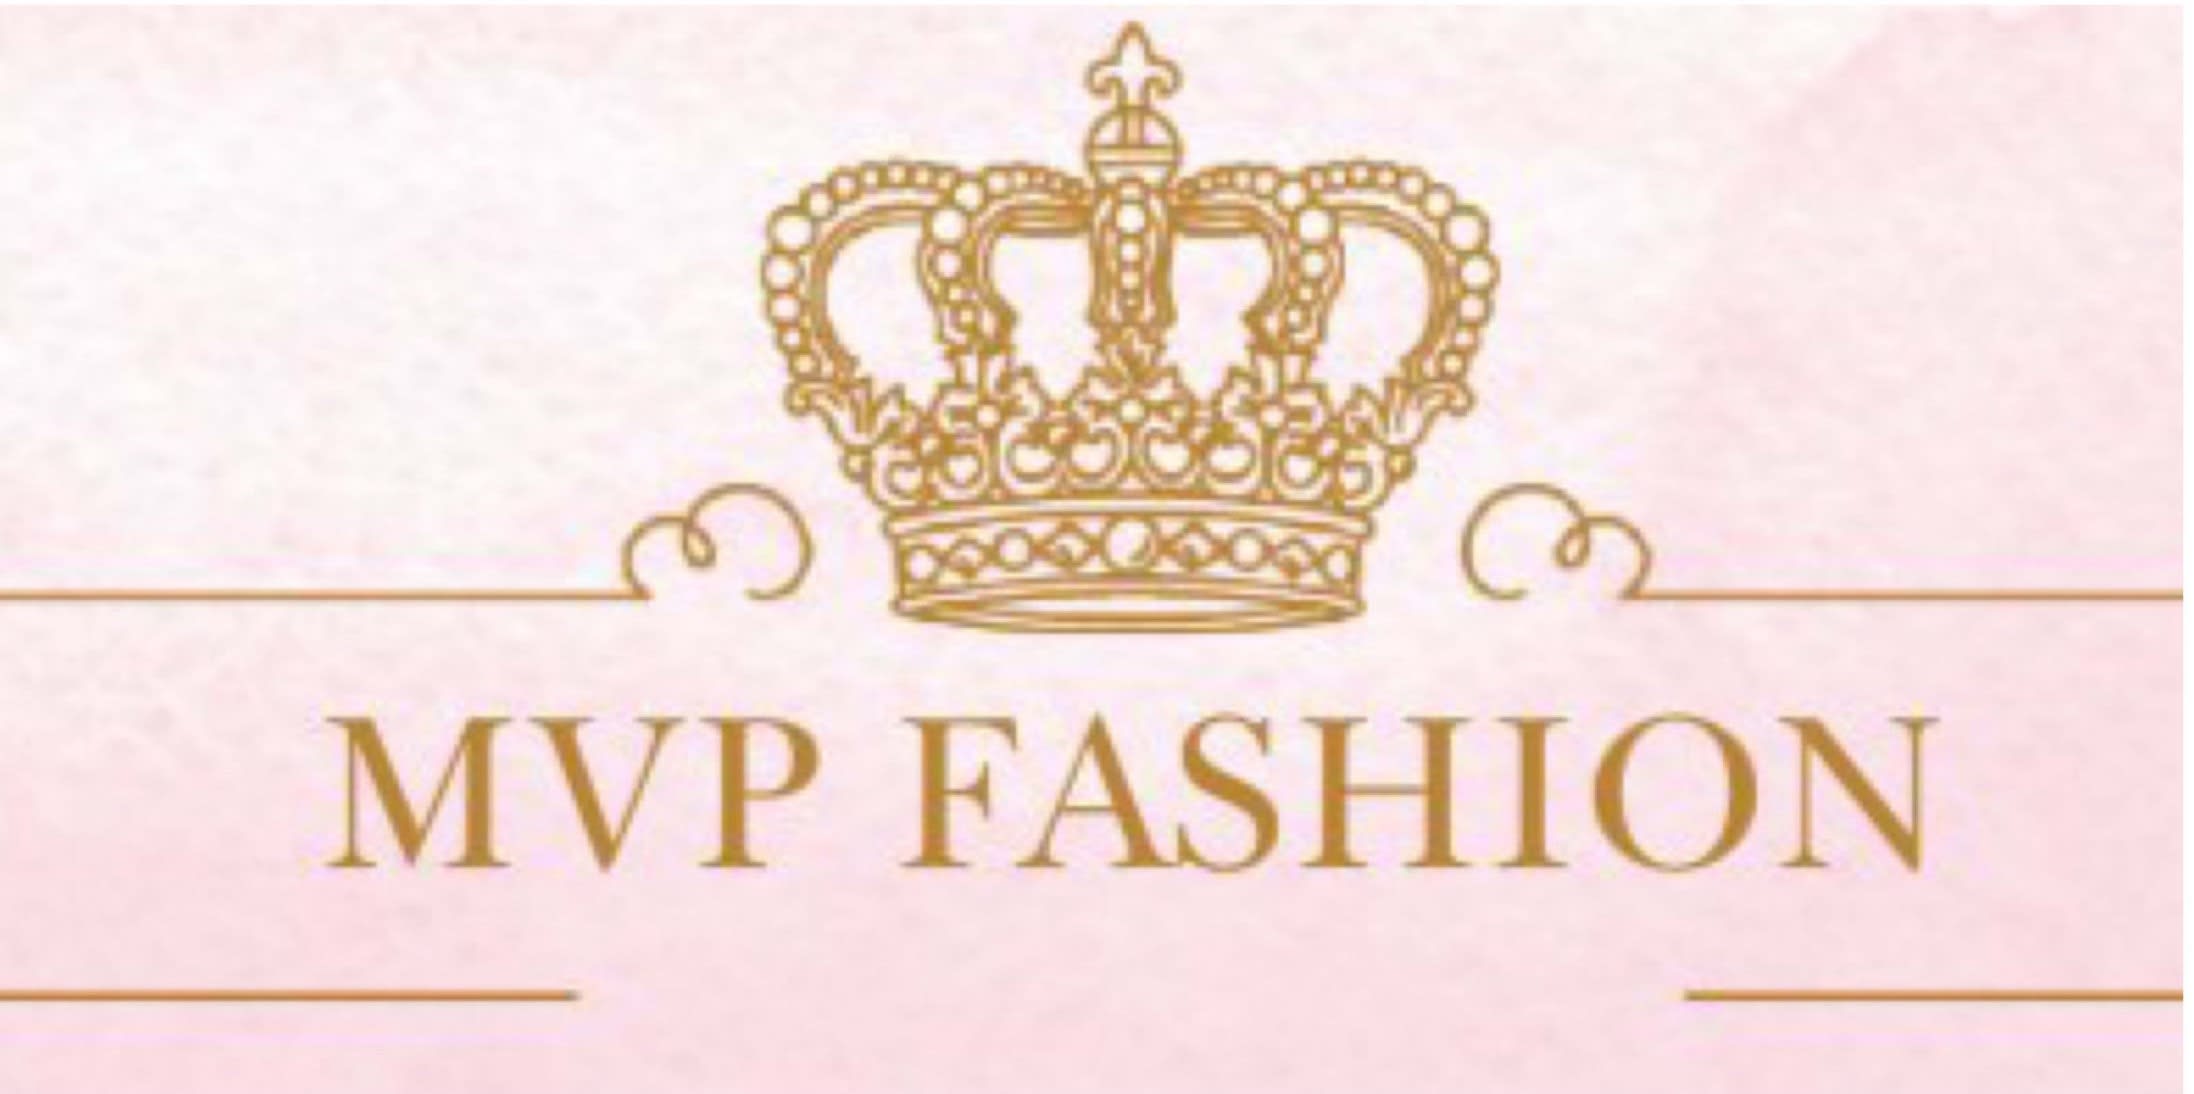 Mvp Fashion